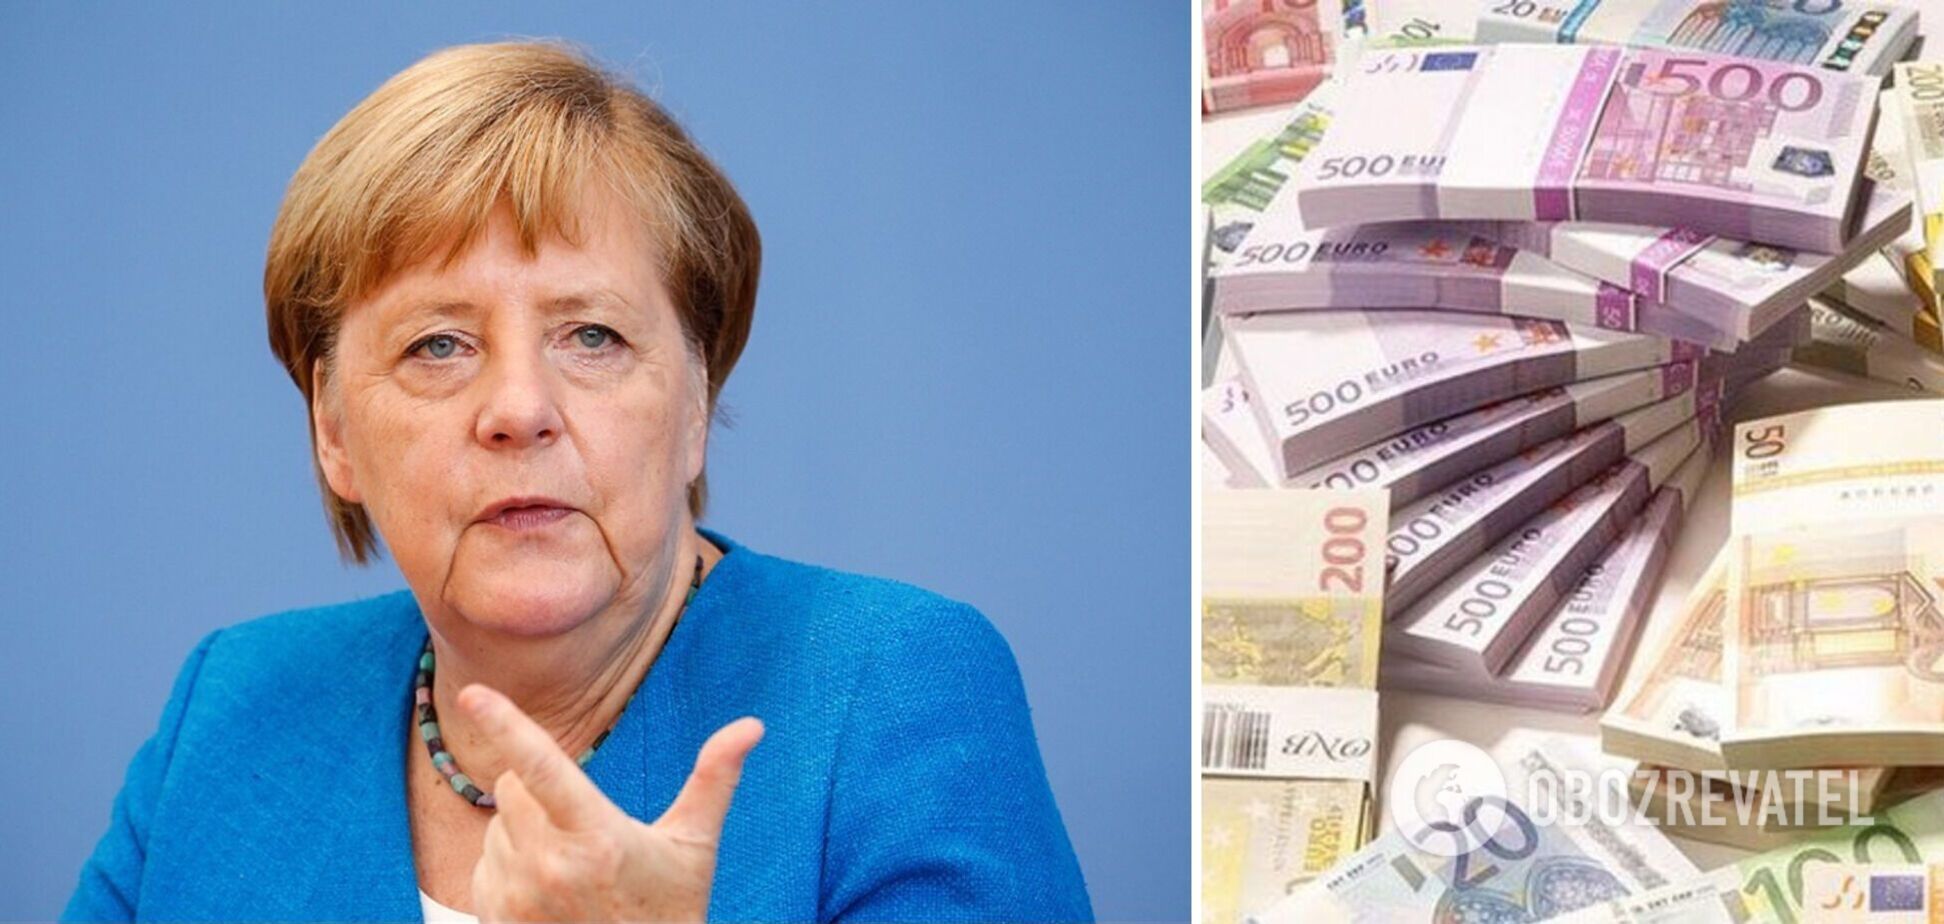 В Германии обвинили Меркель в разбазаривании государственных средств на содержание офиса экс-канцлера – Spiegel